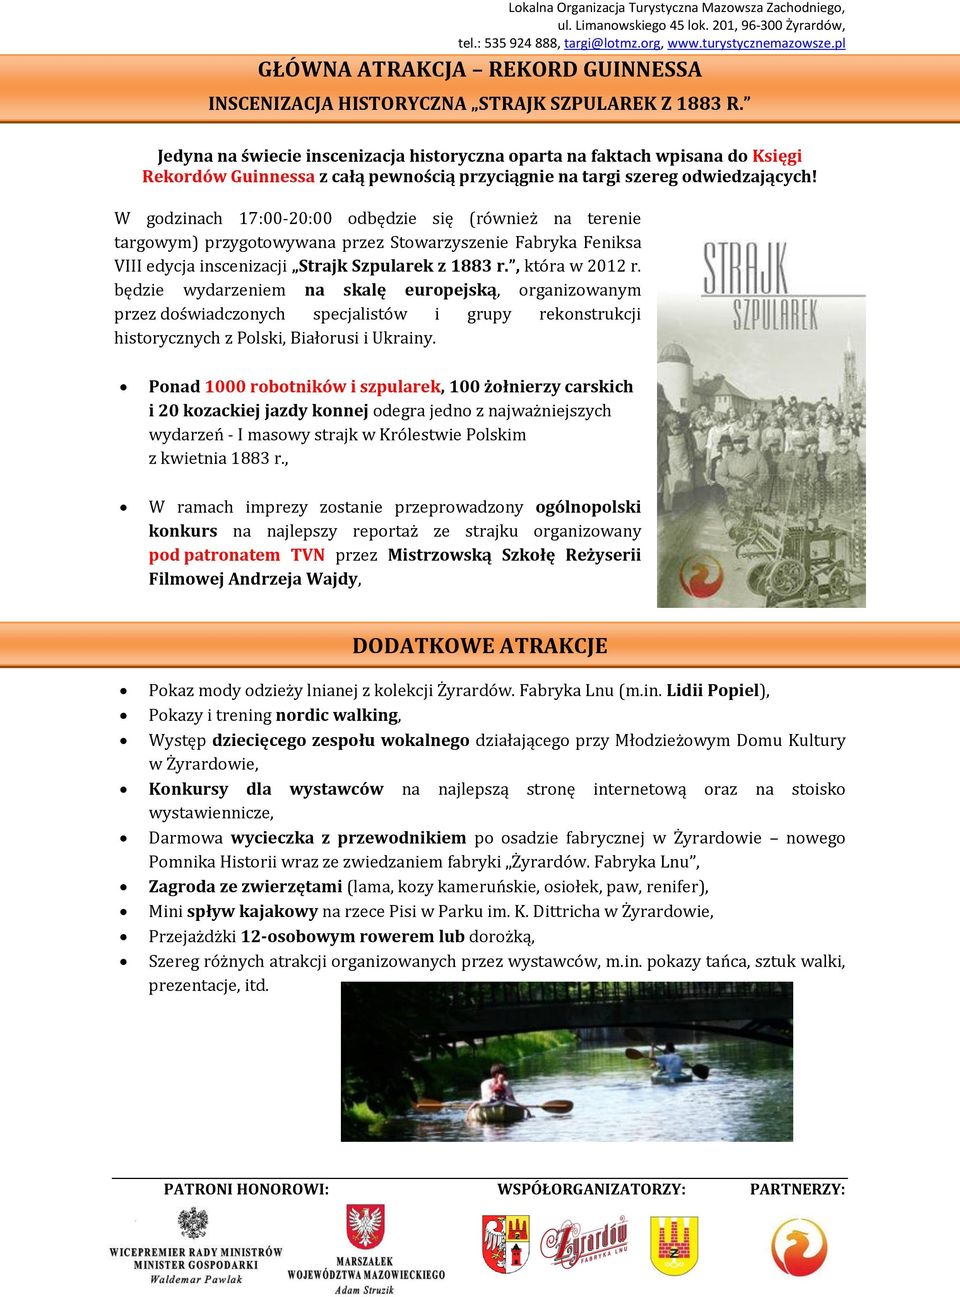 W godzinach 17:00-20:00 odbędzie się (również na terenie targowym) przygotowywana przez Stowarzyszenie Fabryka Feniksa VIII edycja inscenizacji Strajk Szpularek z 1883 r., która w 2012 r.